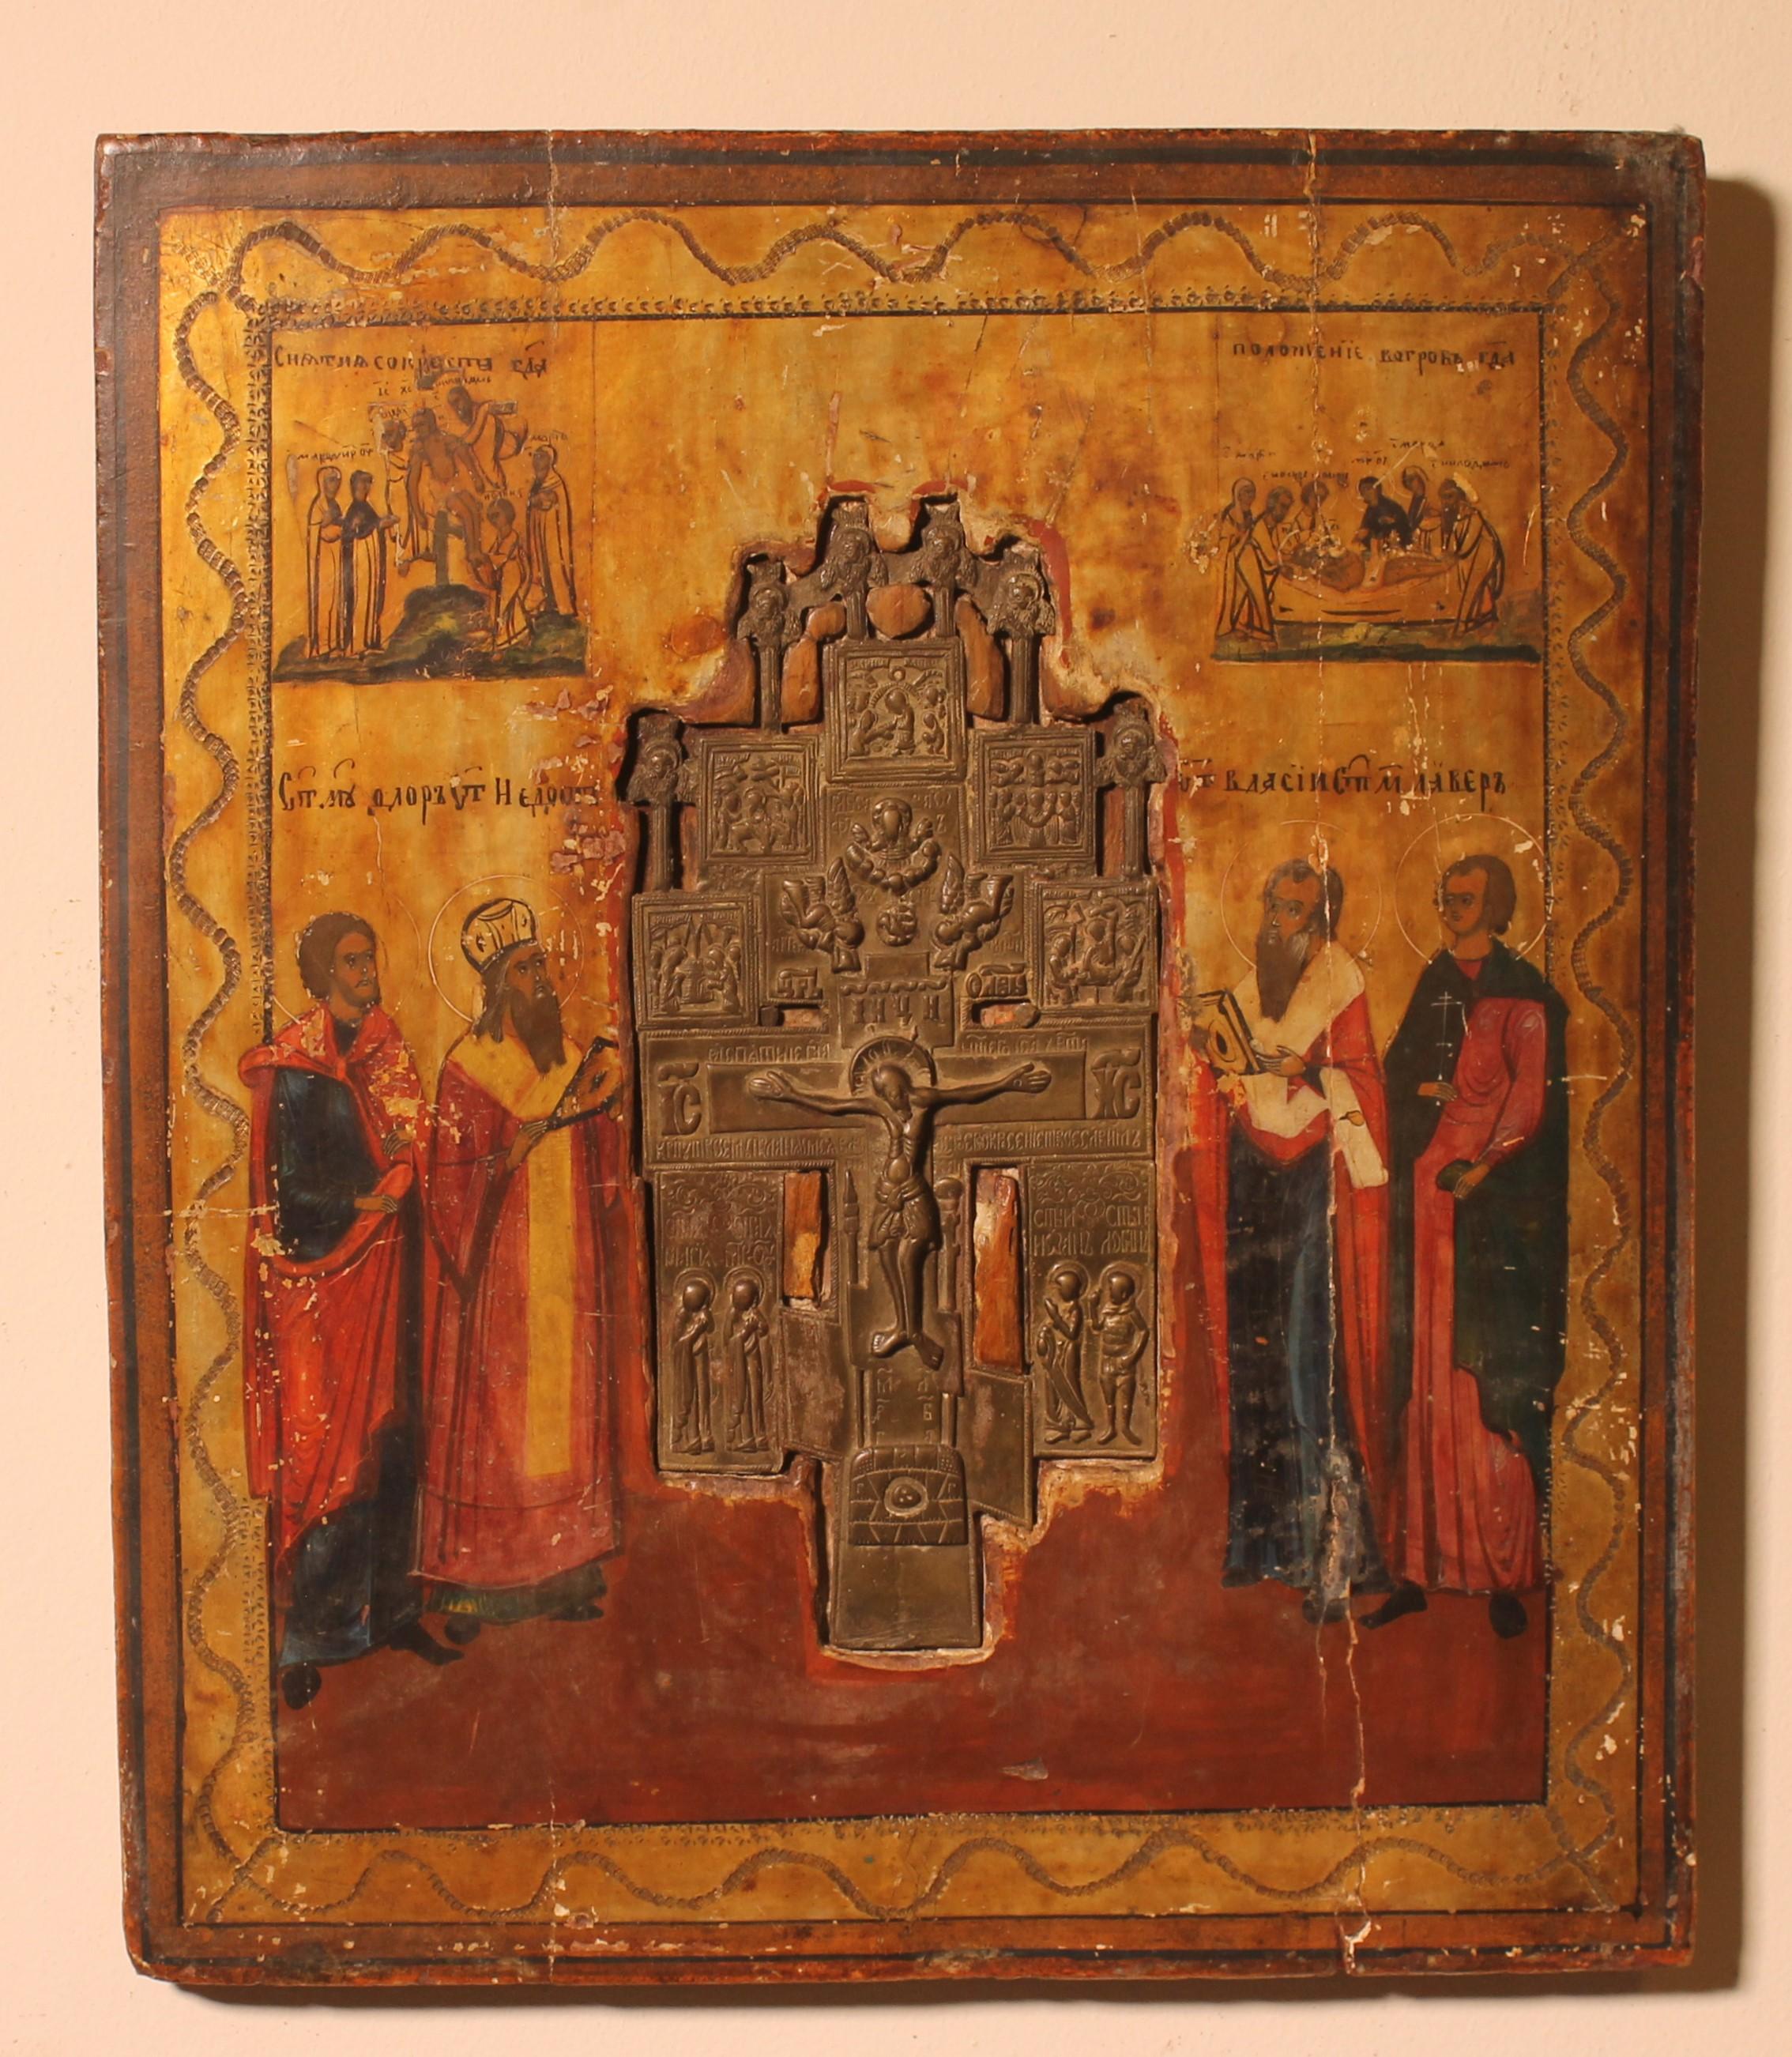 Sehr schöne russische Ikone mit einem Prozessionskreuz in der Mitte aus dem 17.

Wir können sehen, dass die Ikone so gestaltet wurde, dass sie das Prozessionskreuz mit dem Christus in der Mitte und den Aposteln, die ihn ansehen, aufnehmen